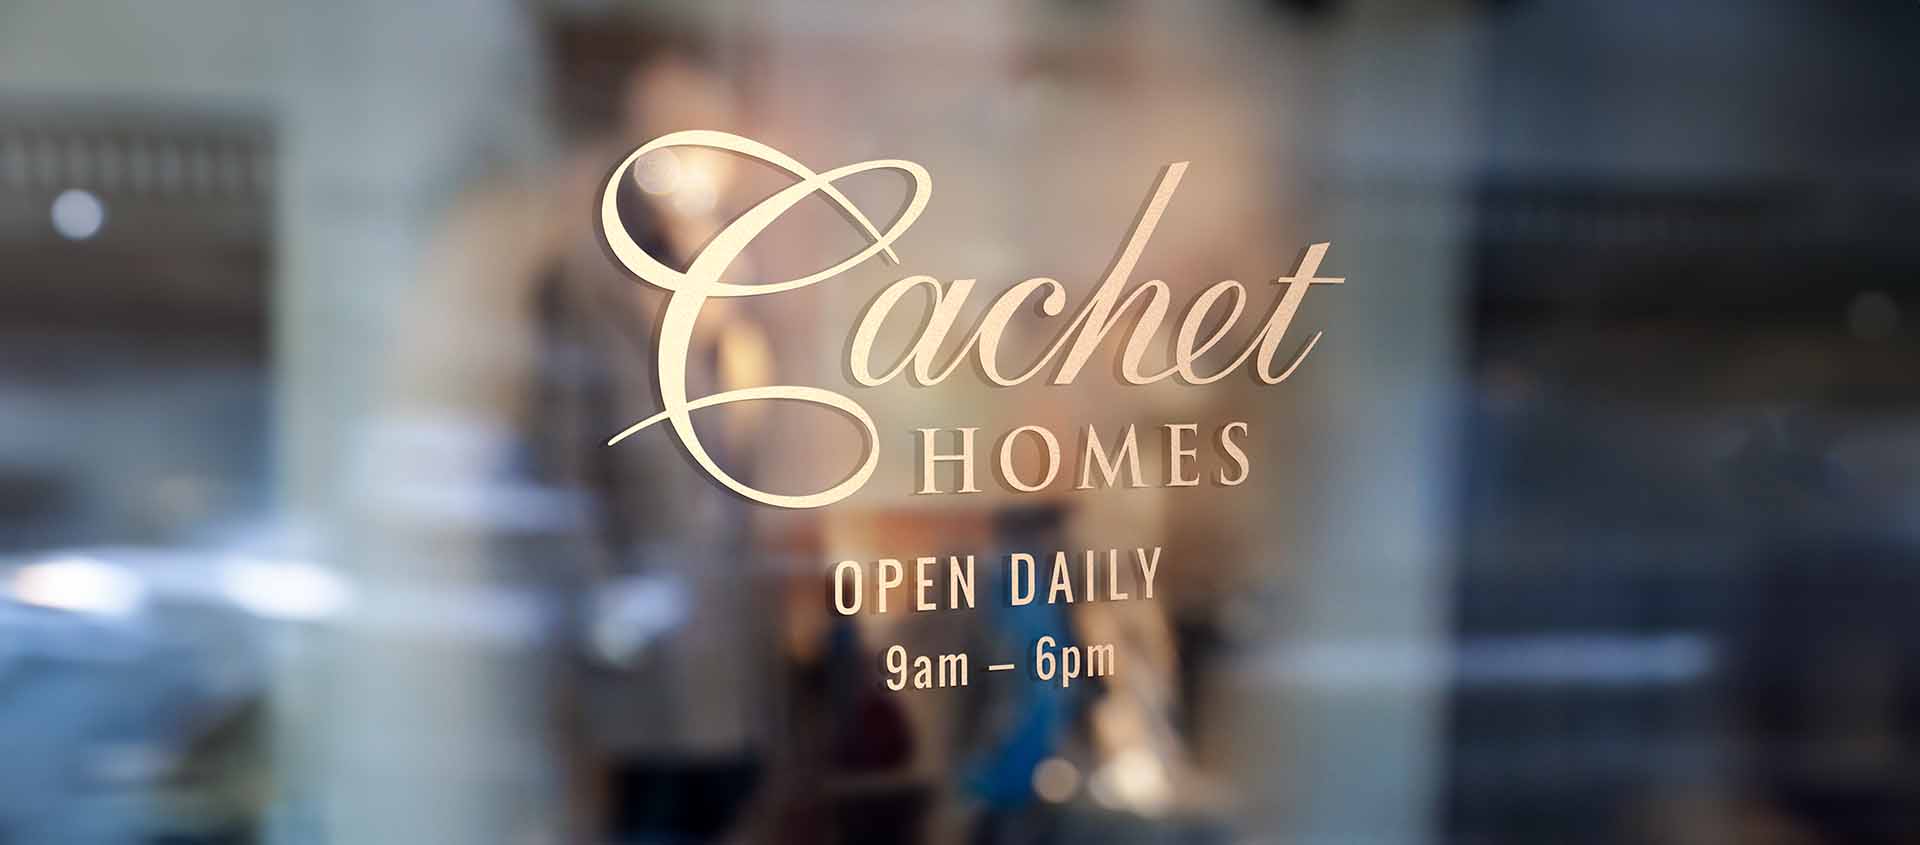 cachet-homes-doorsign